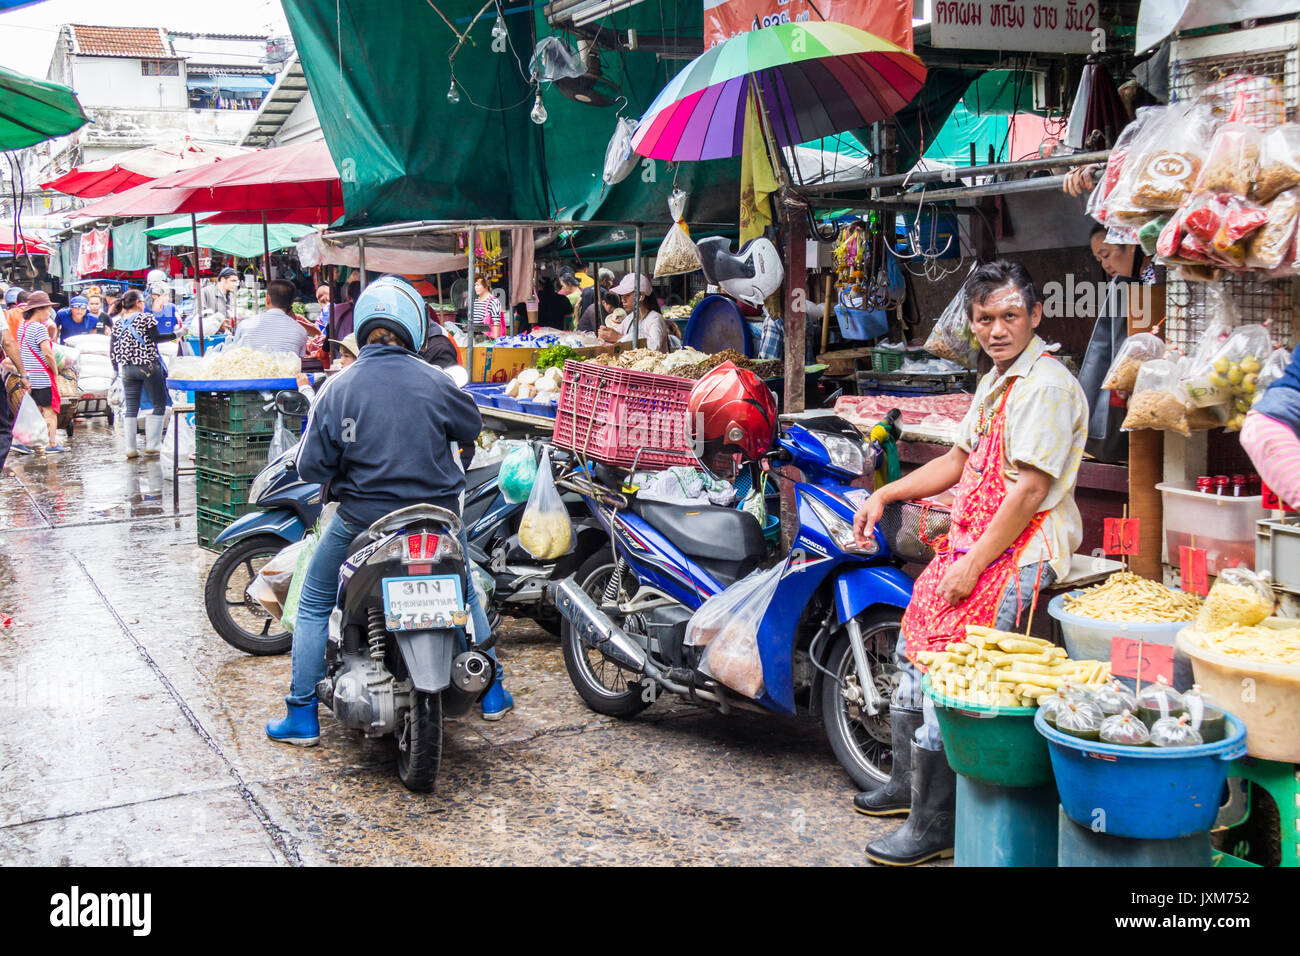 Customers and vendors on Khlong Toei wet market, Bangkok, Thailand Stock Photo